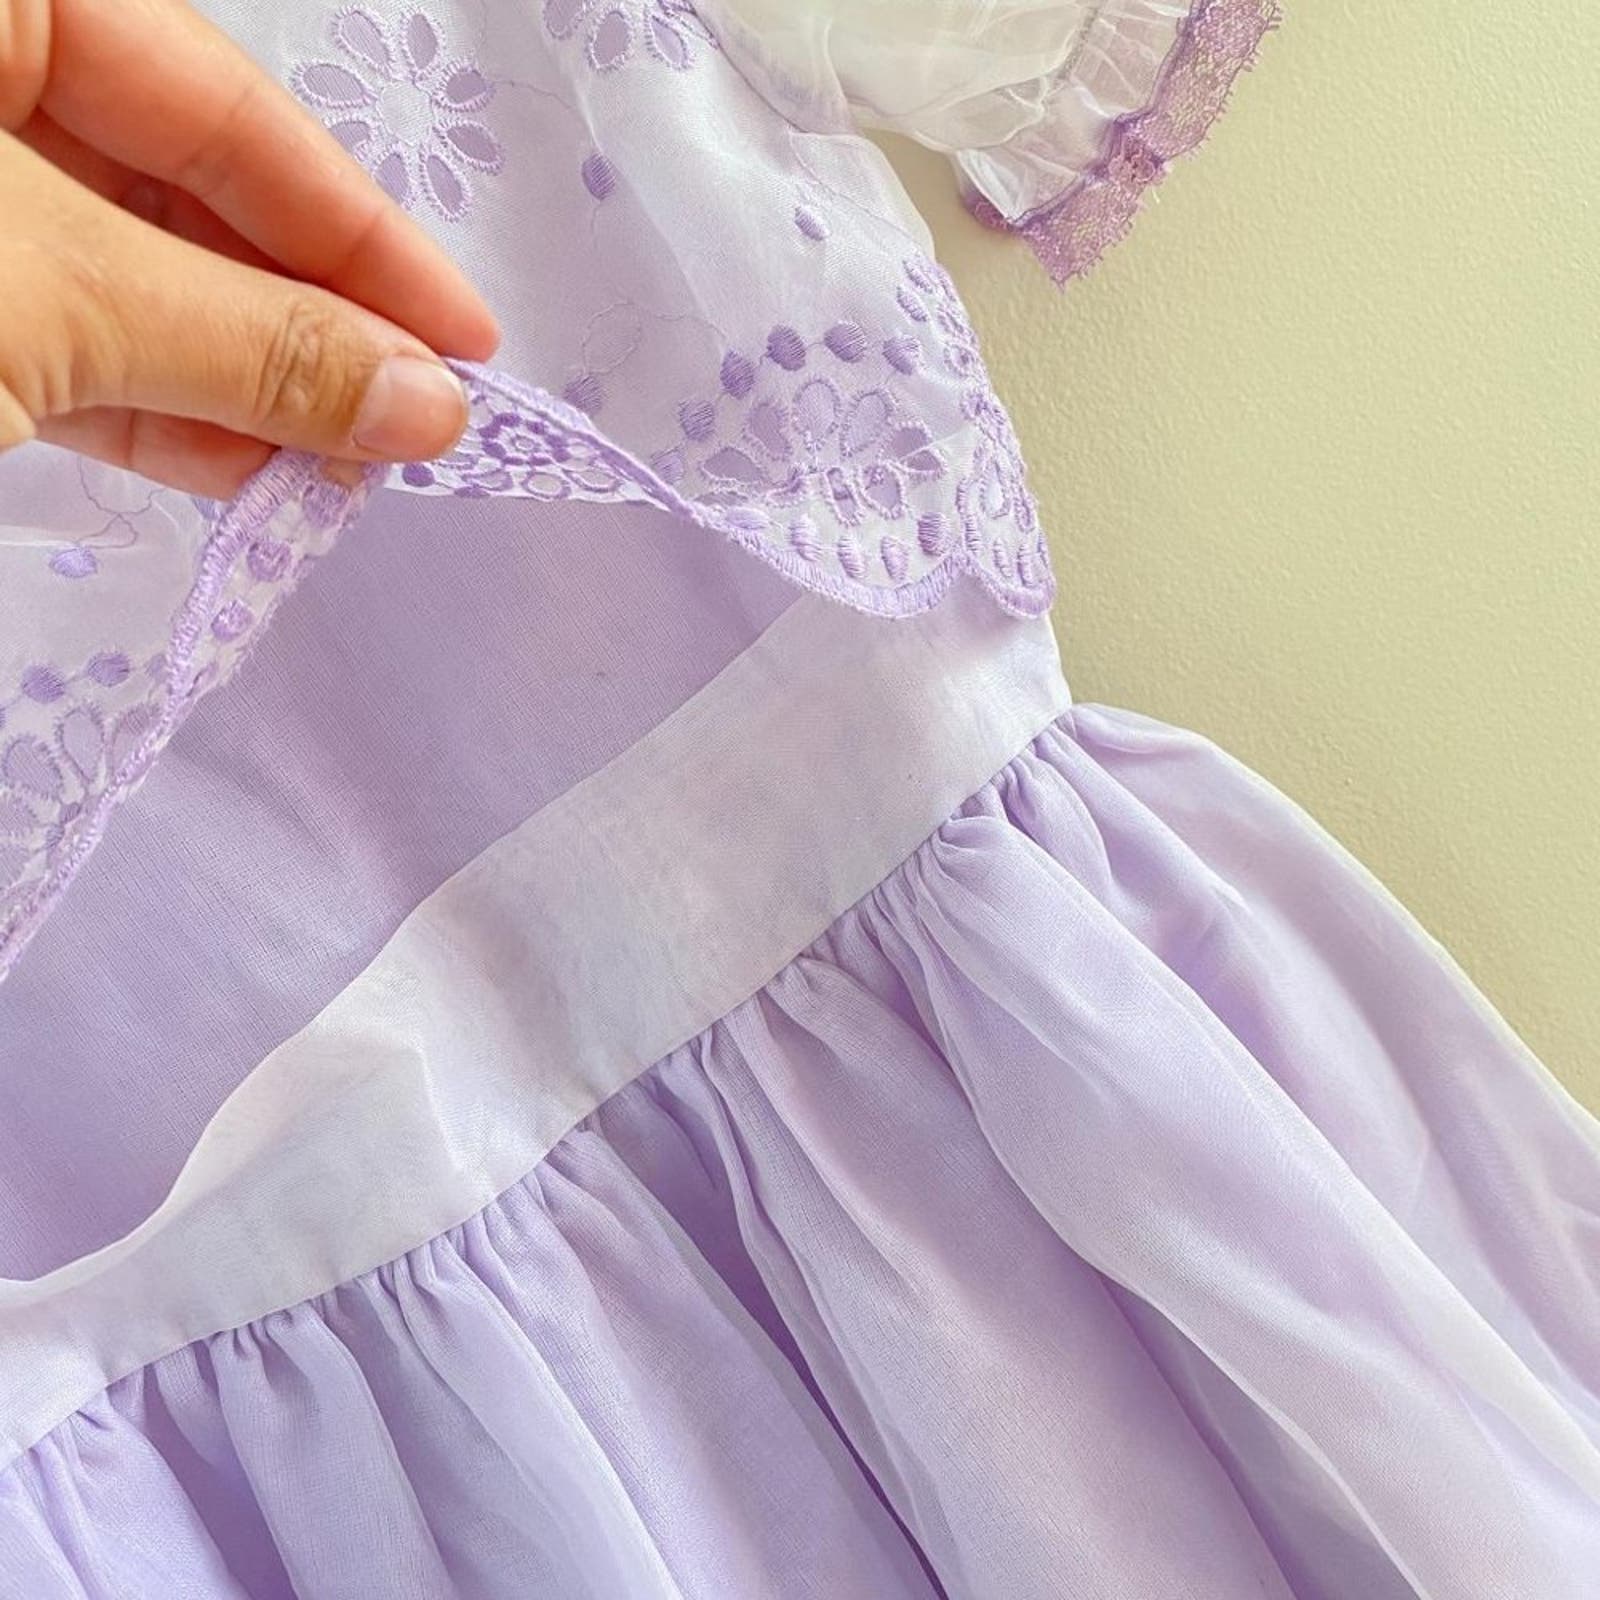 Vintage Claire Brooke Originals Sheer Purple Party Dress